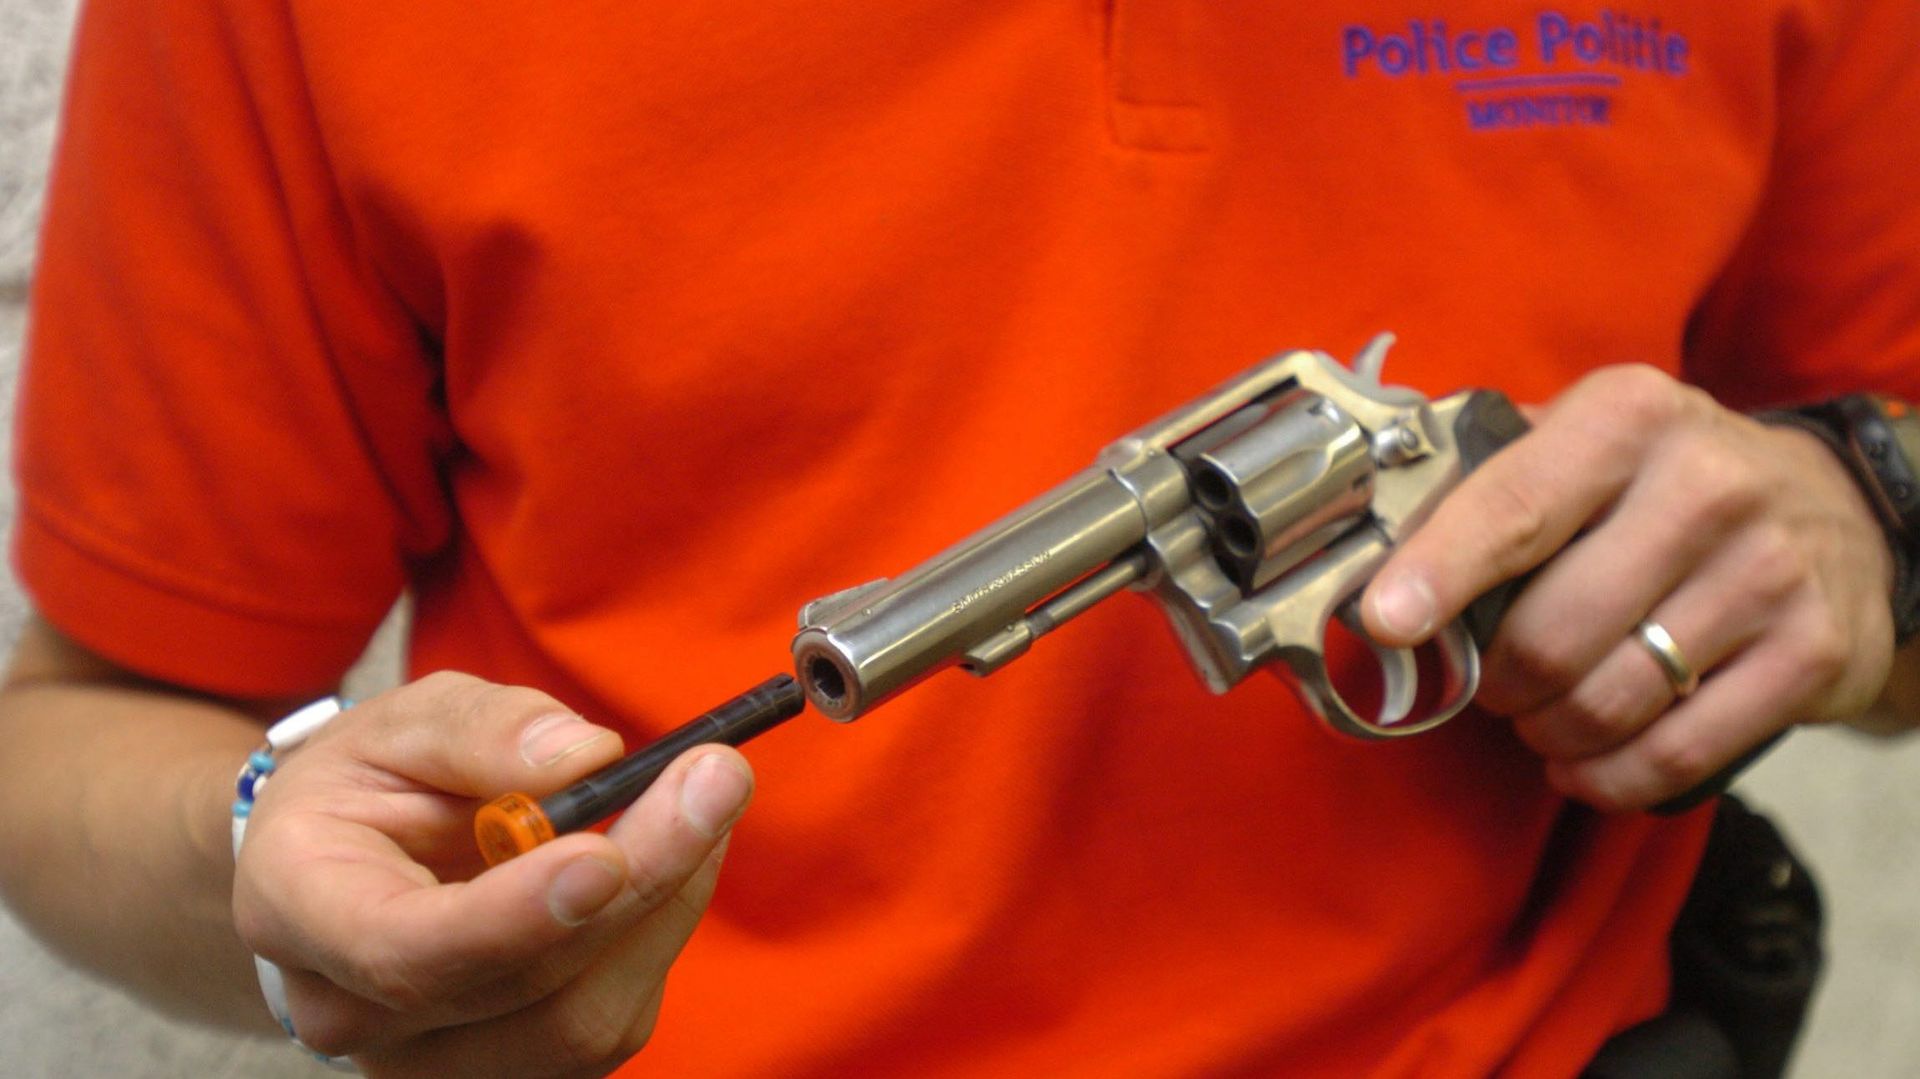 La police liégeoise est équipée d’armes provenant de la FN ; les autorités fédérales elles ont choisi les Smith & Wesson (illustration).